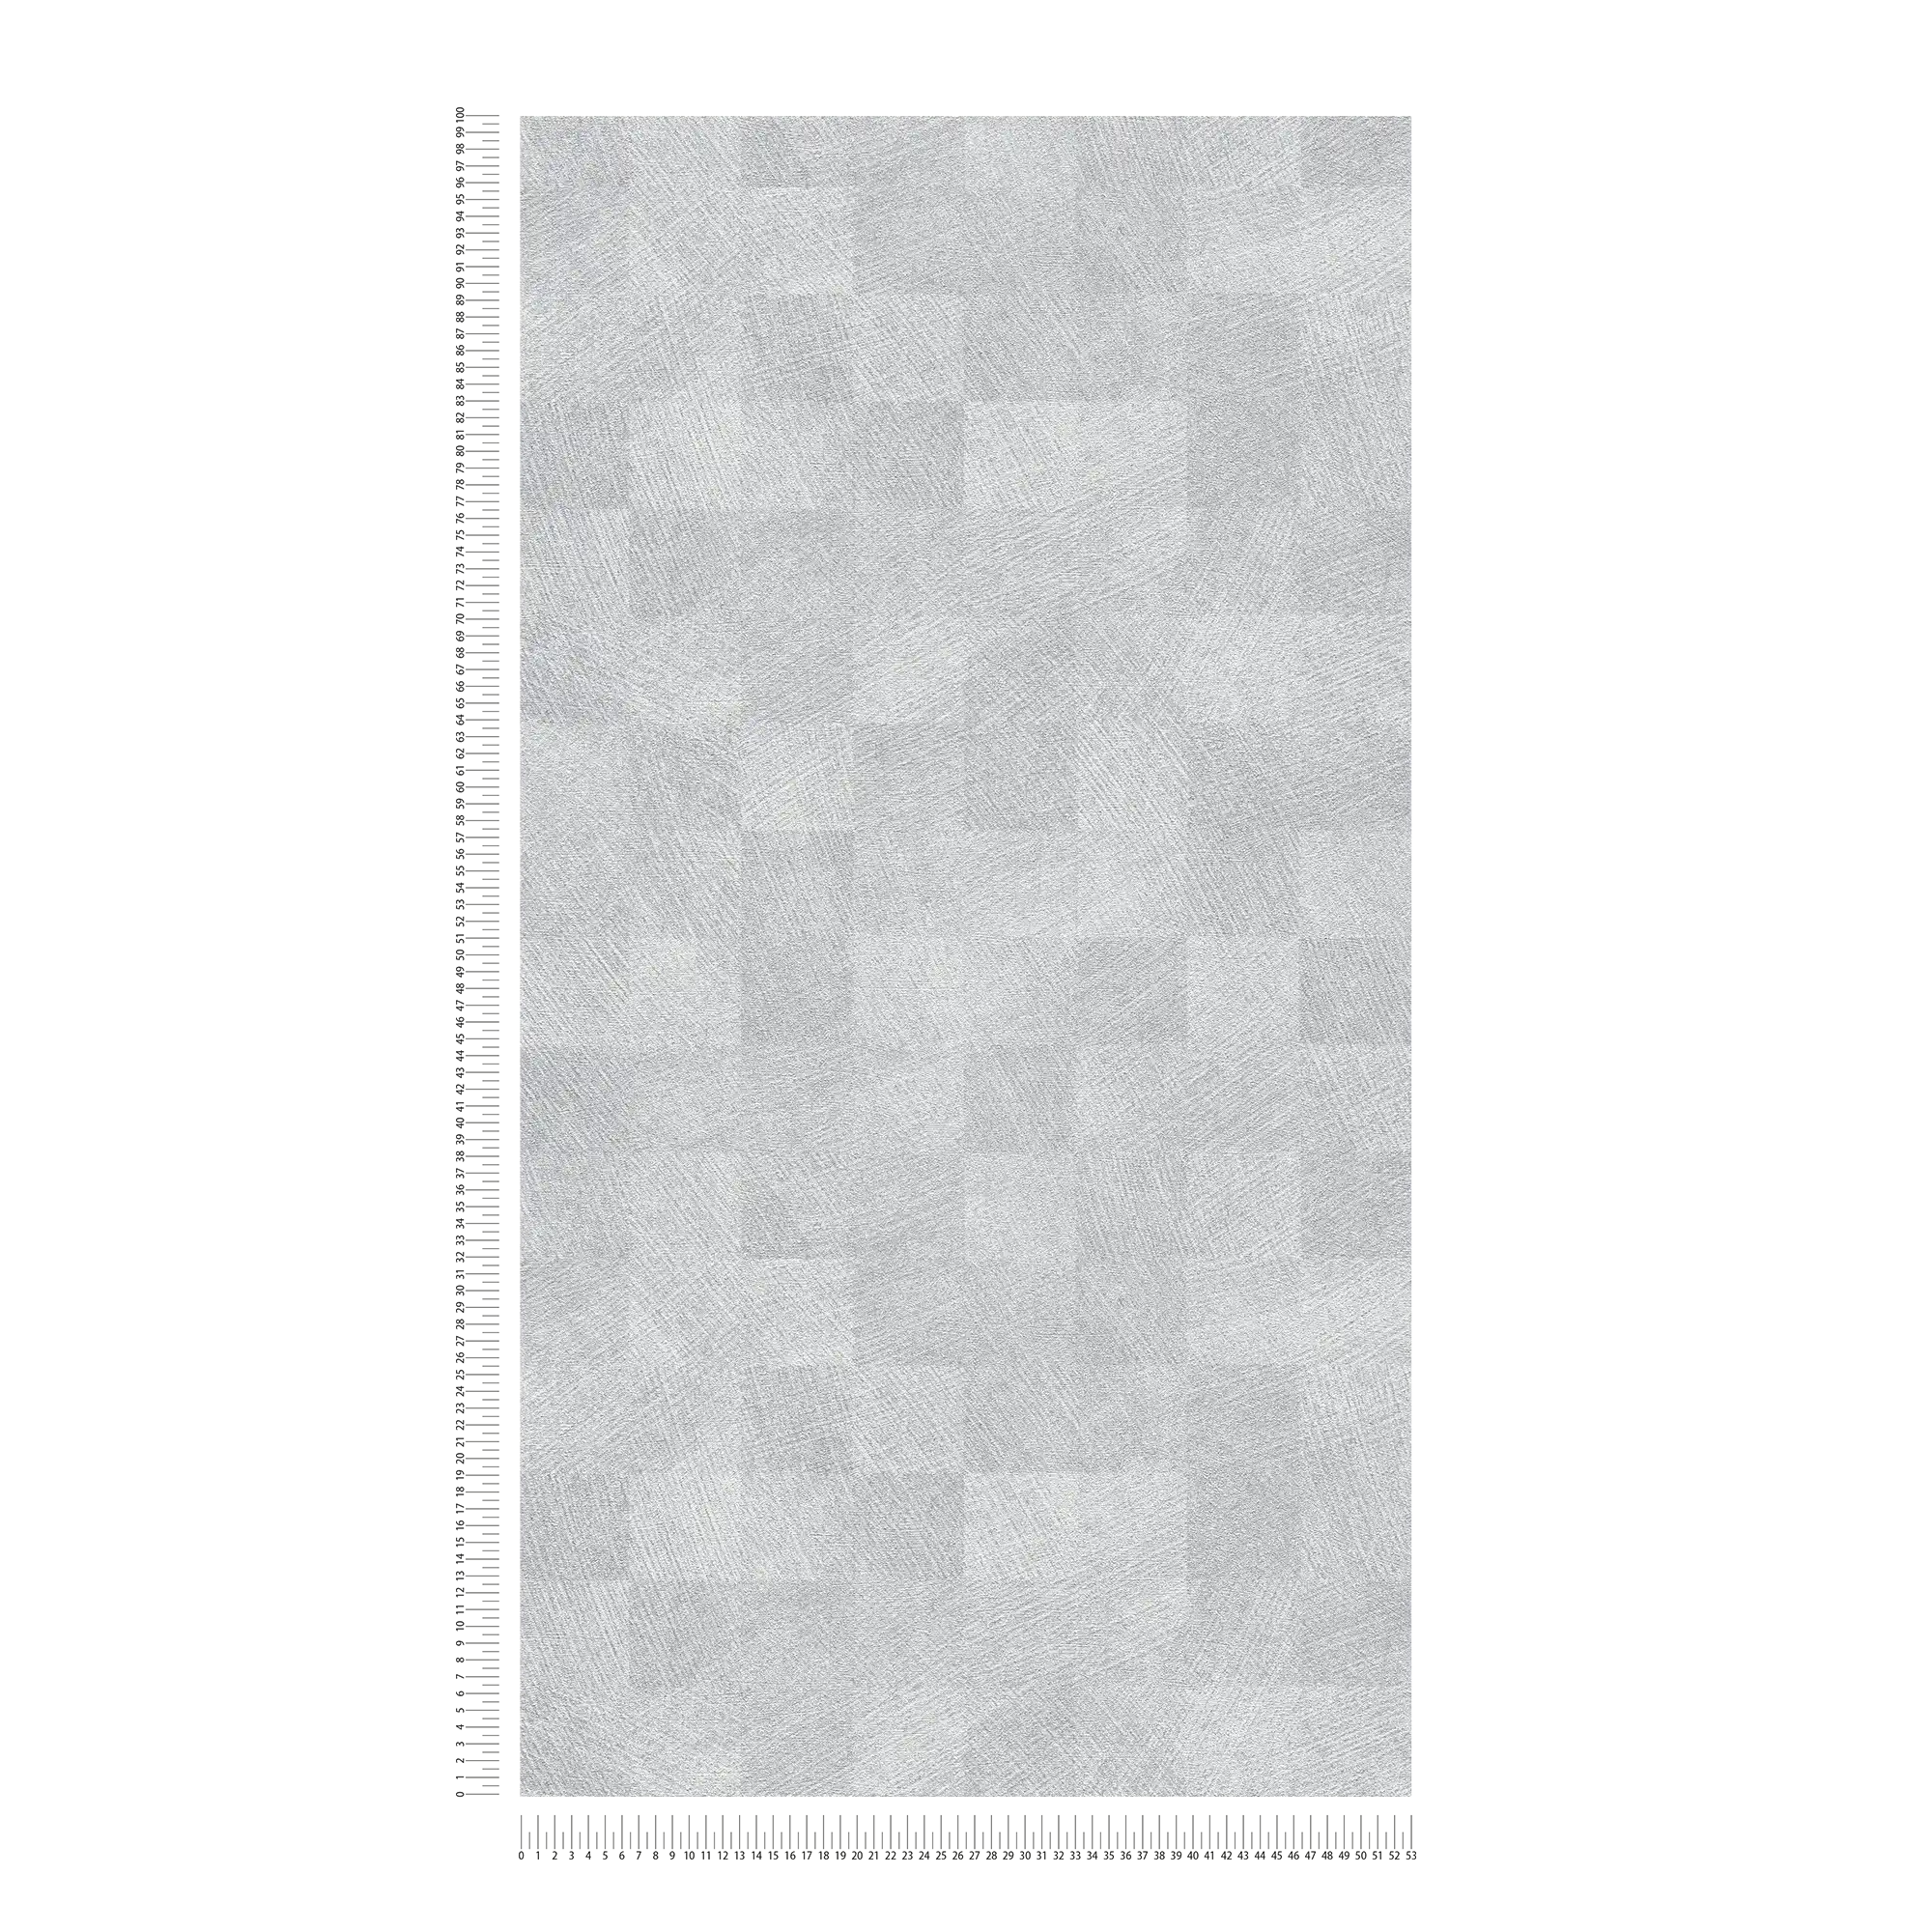             Carta da parati metallizzata a quadri con effetto lucido - grigio
        